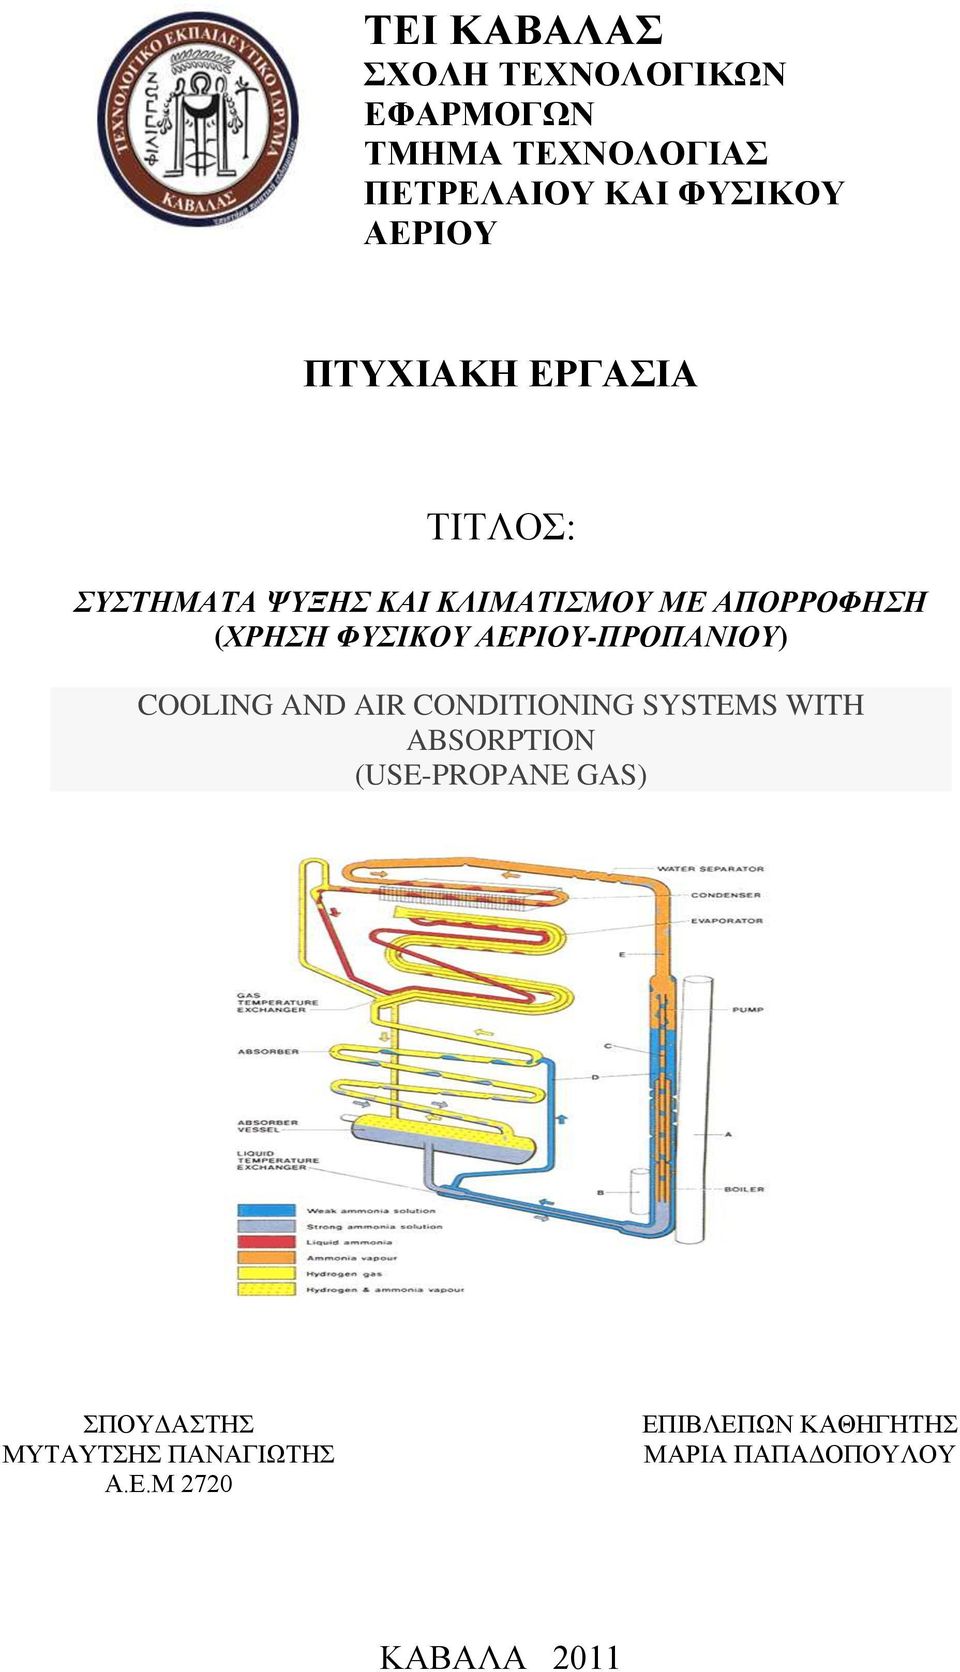 ΑΕΡΙΟΥ-ΠΡΟΠΑΝΙΟΥ) COOLING AND AIR CONDITIONING SYSTEMS WITH ABSORPTION (USE-PROPANE GAS)